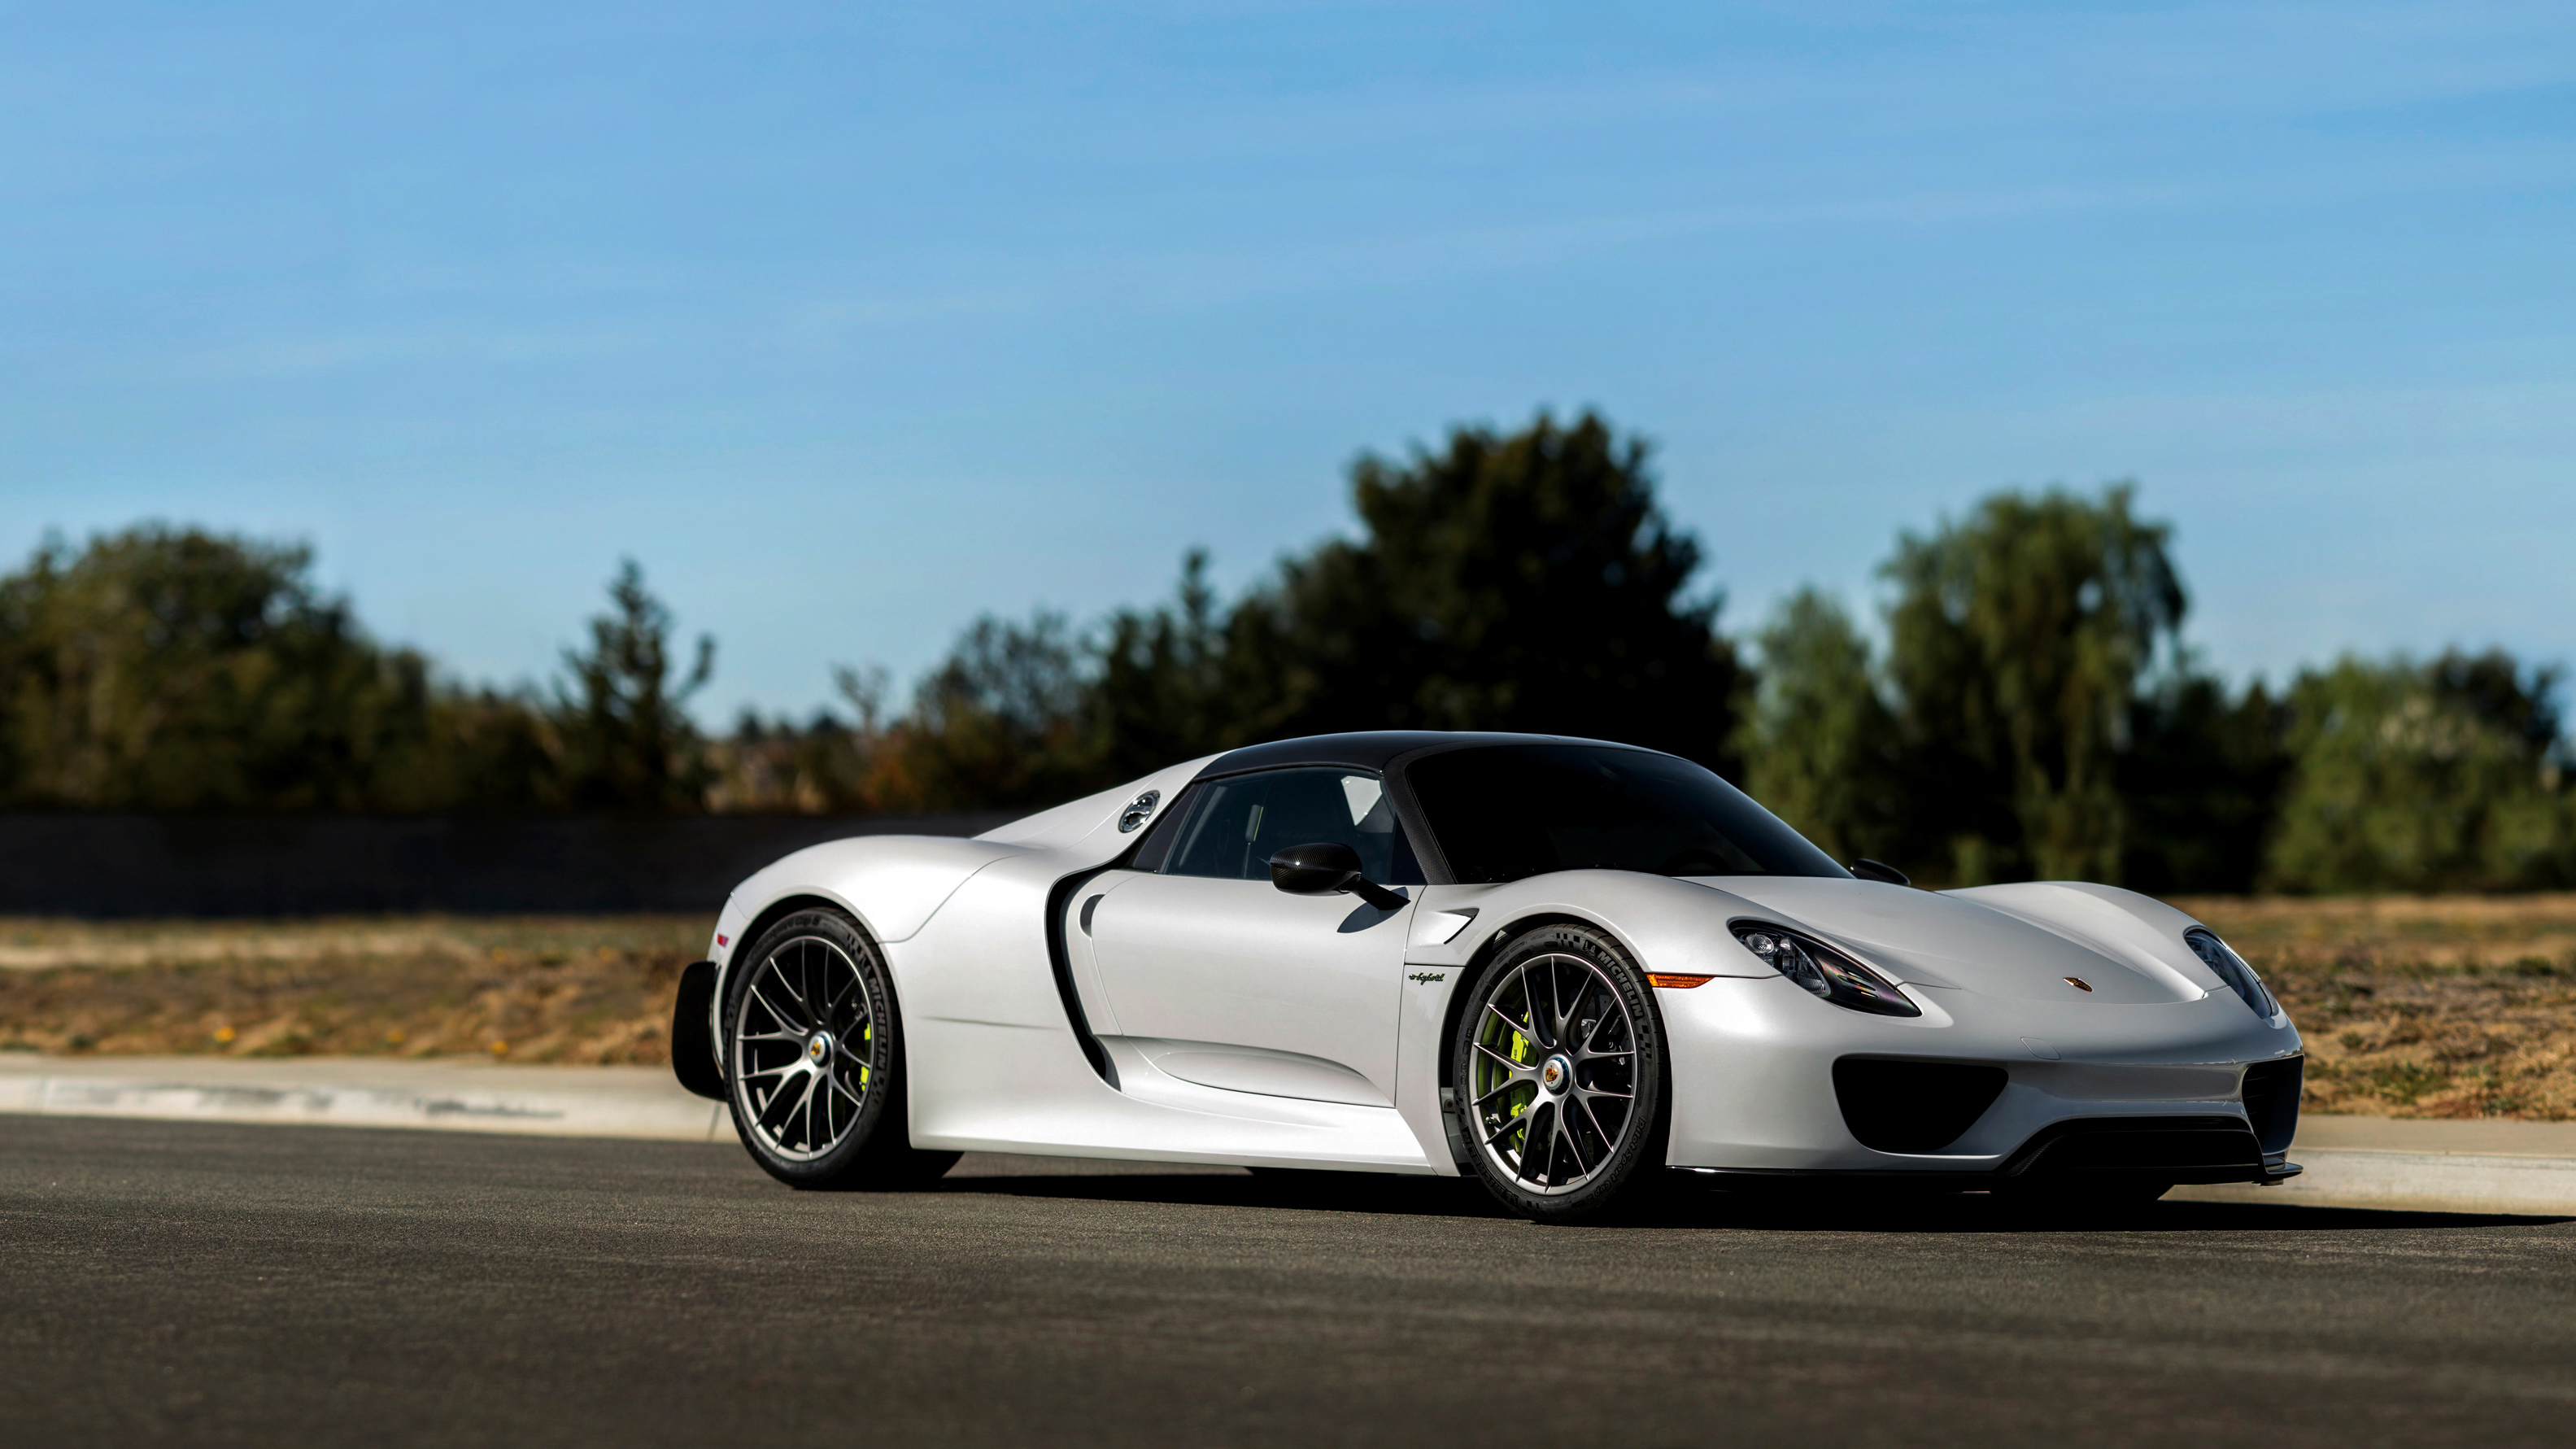 Download mobile wallpaper Porsche, Car, Supercar, Vehicles, White Car, Porsche 918 Spyder for free.